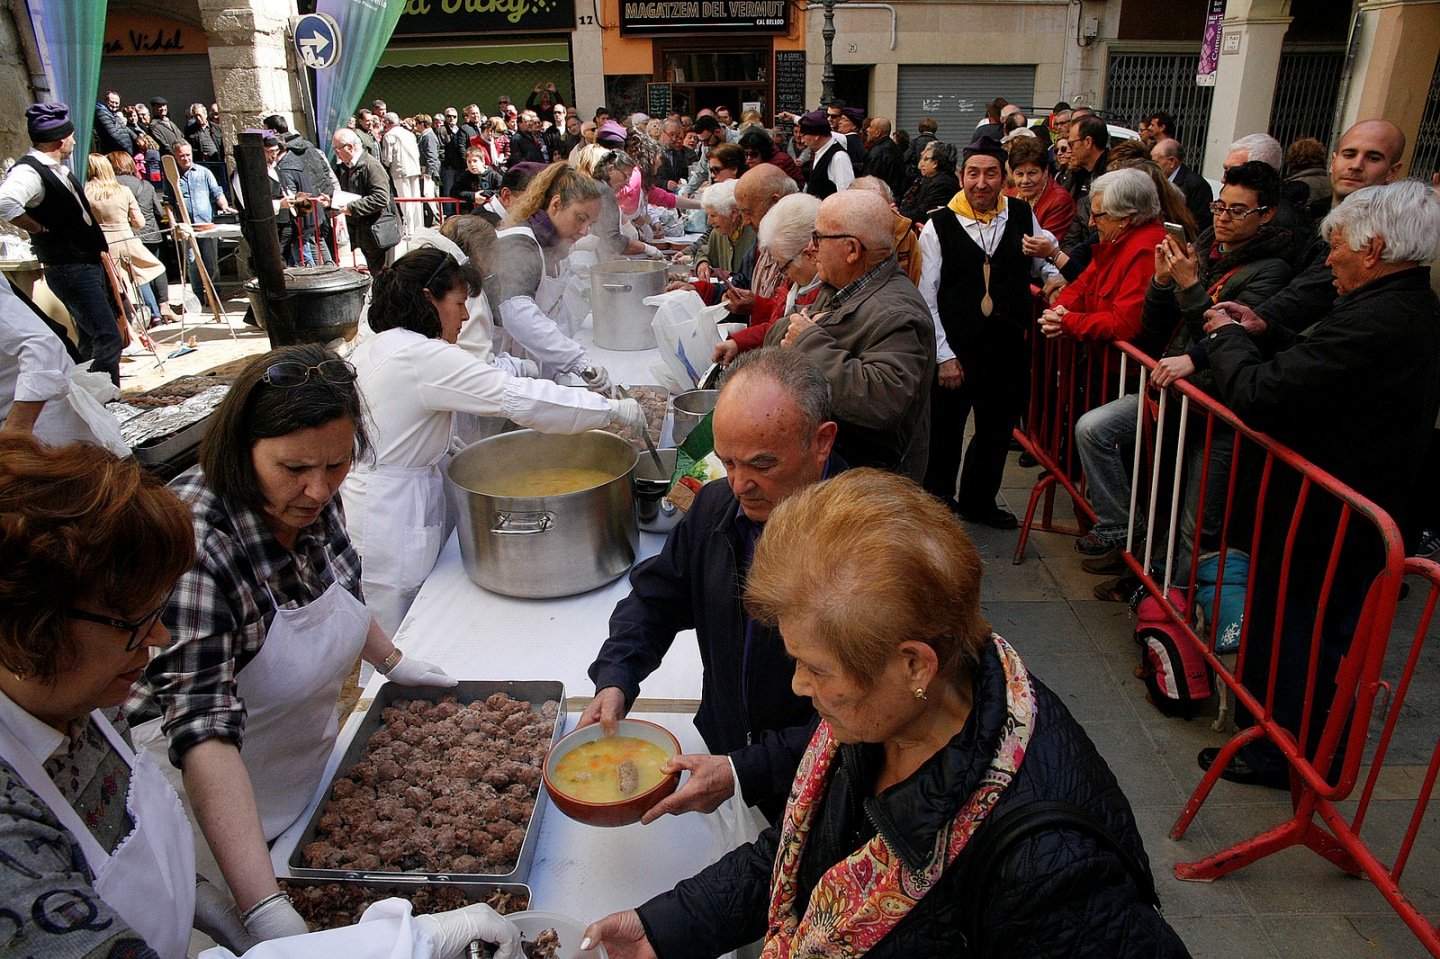 Valls i Andorra la Vella commemoren els 50 anys d'agermanament amb una gran escudellada